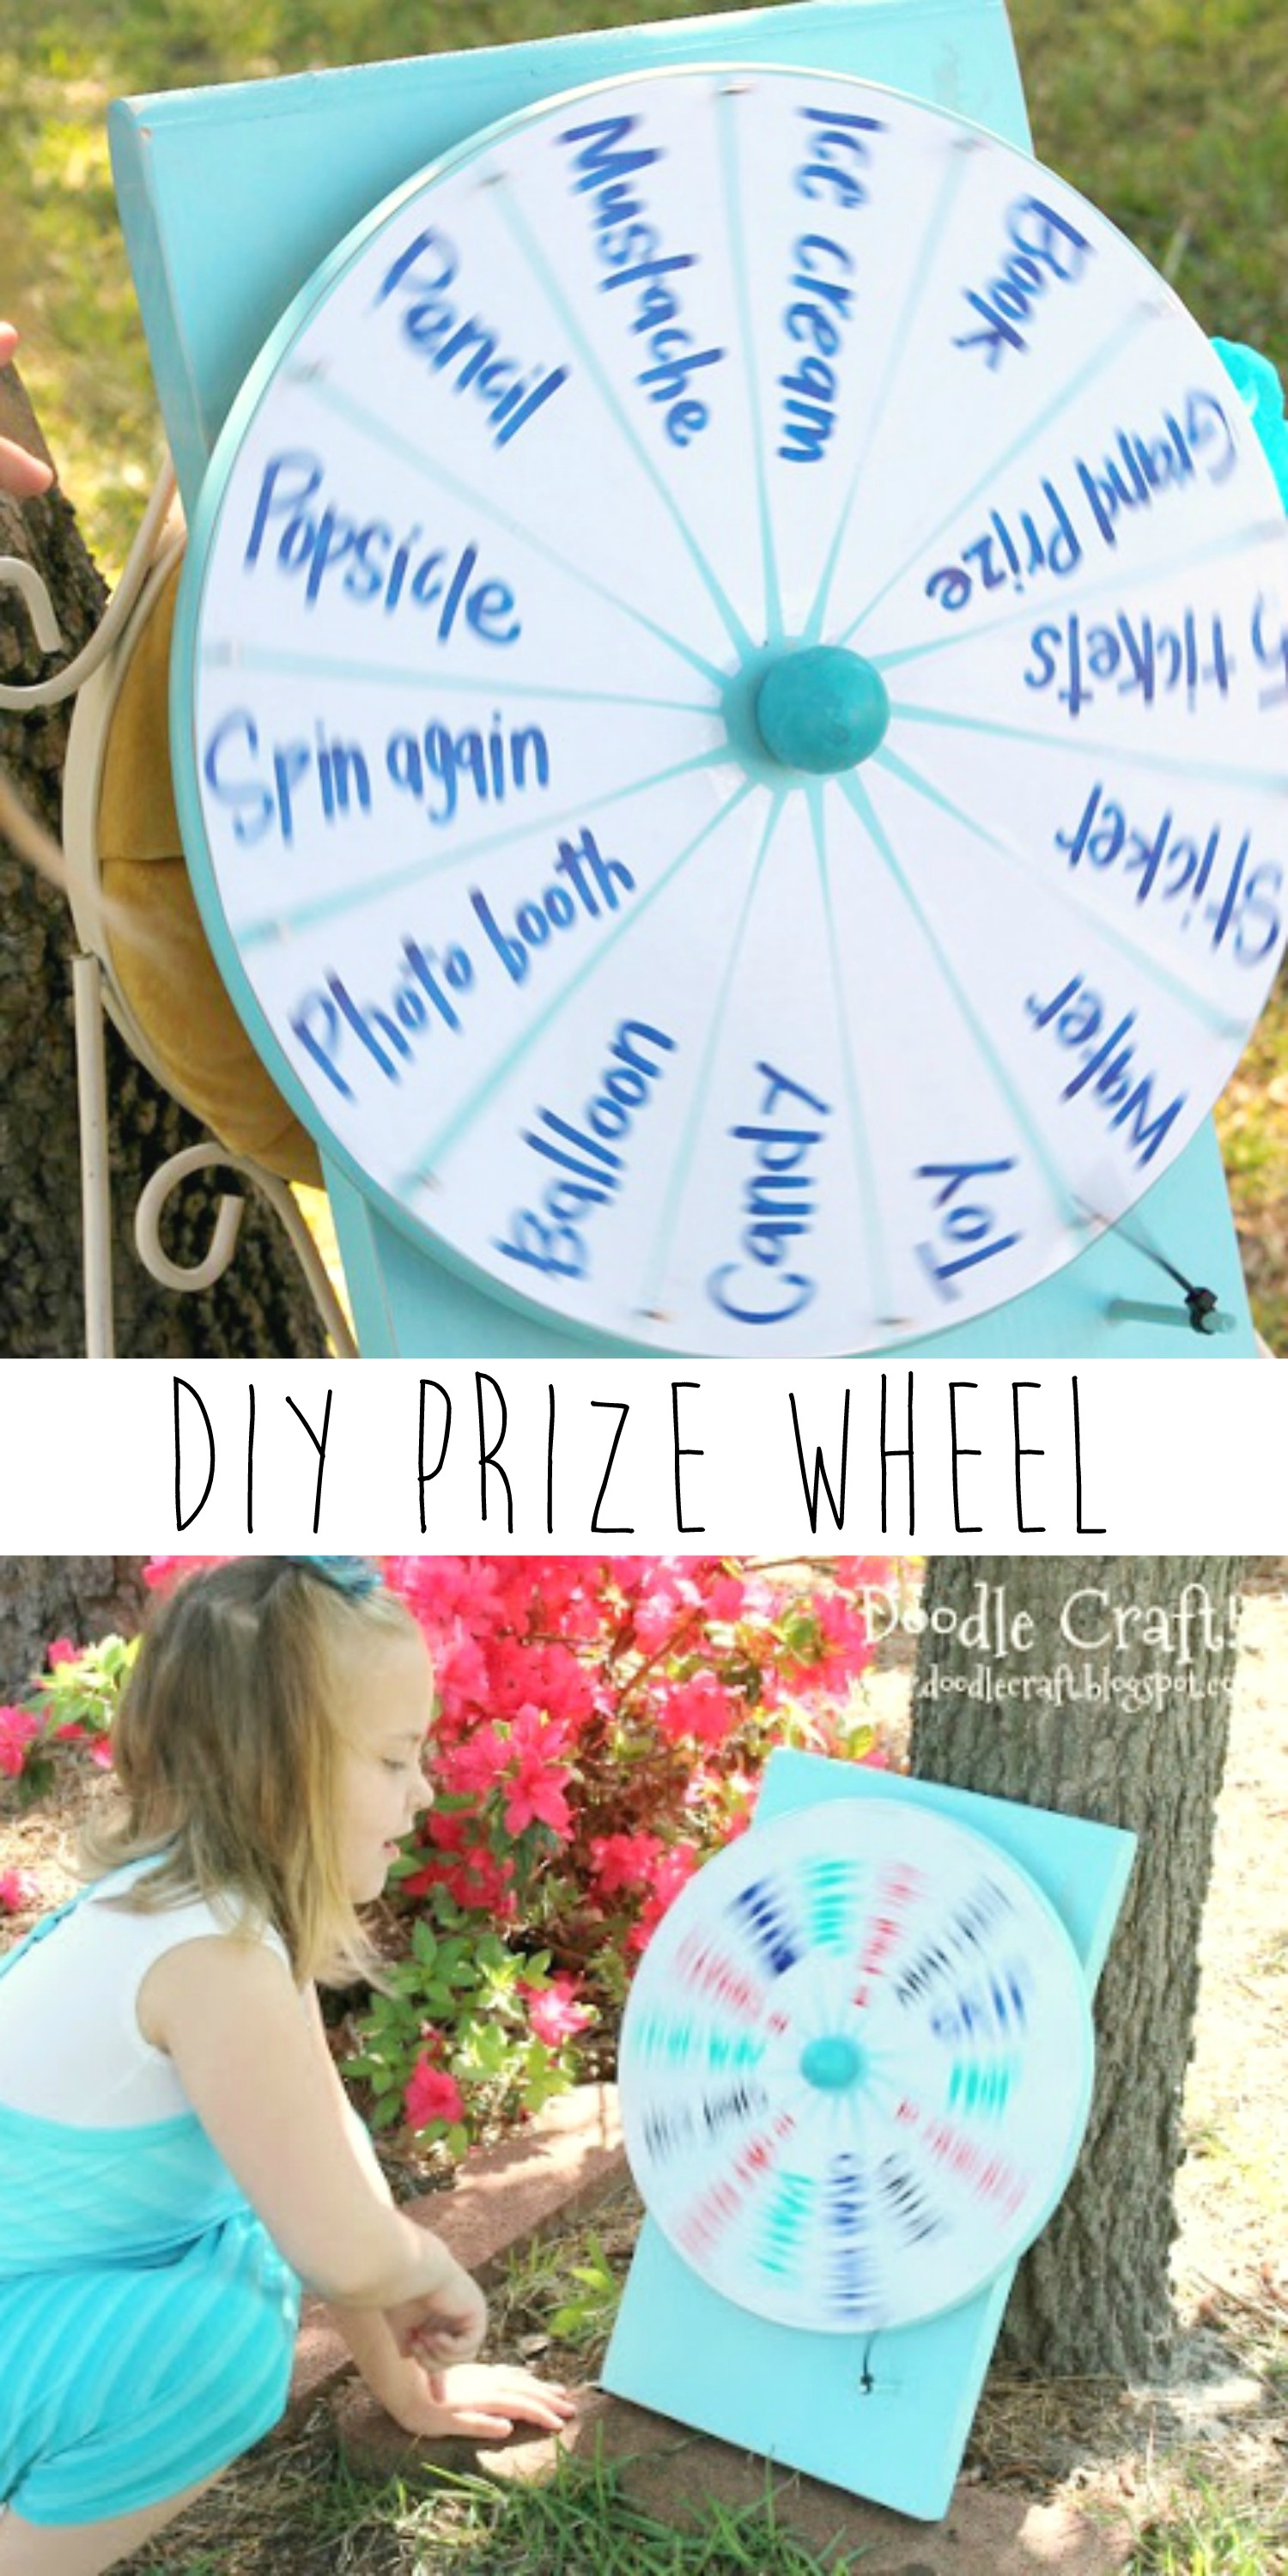 DIY Spinner Prize Wheel - U Create